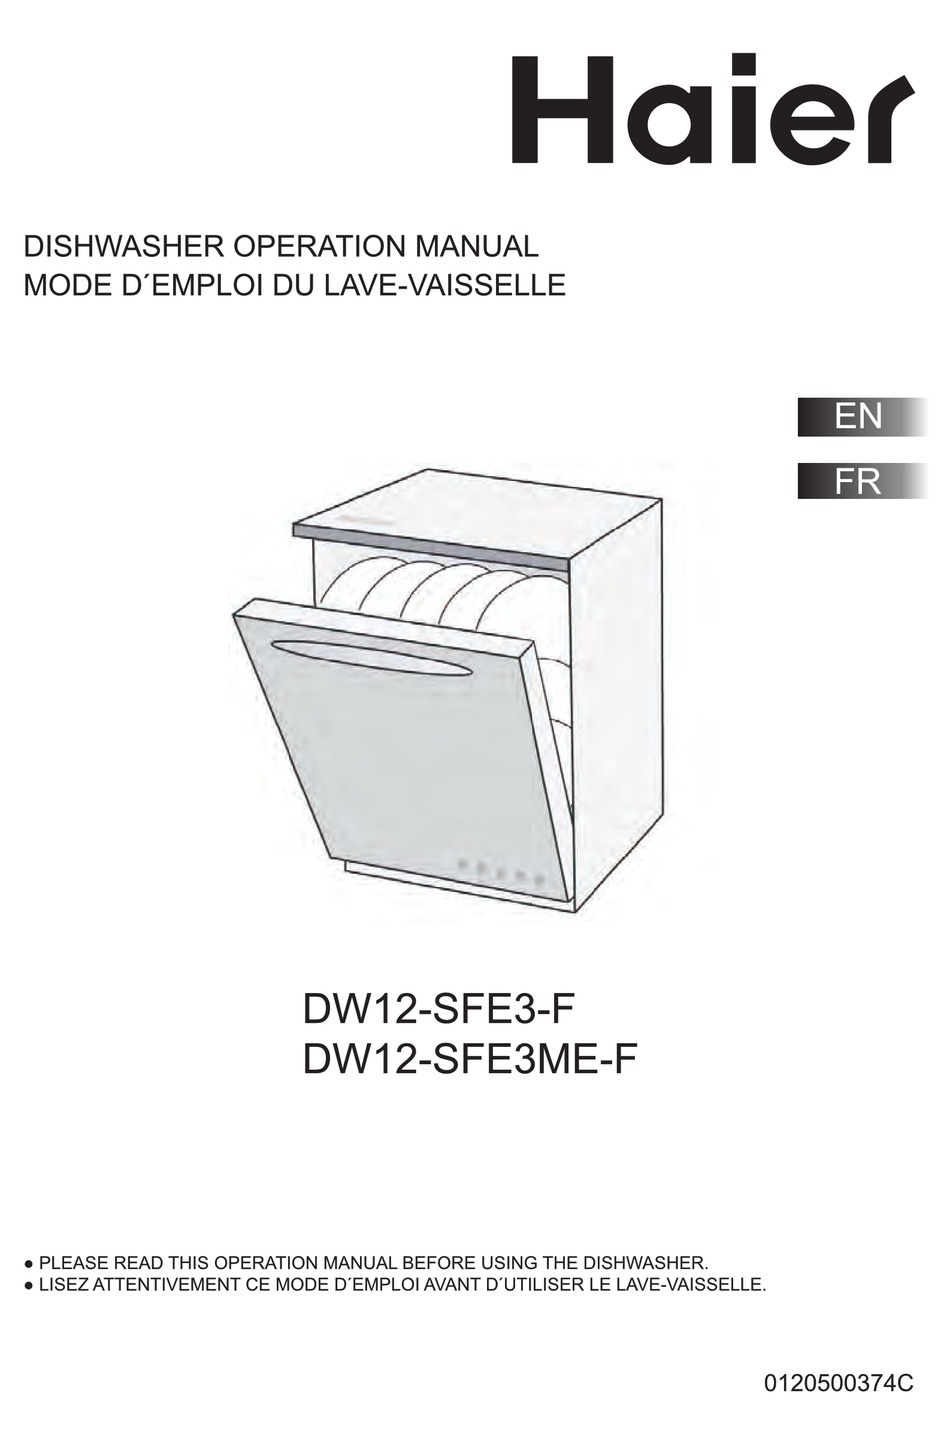 DW12-SFE3ME-F